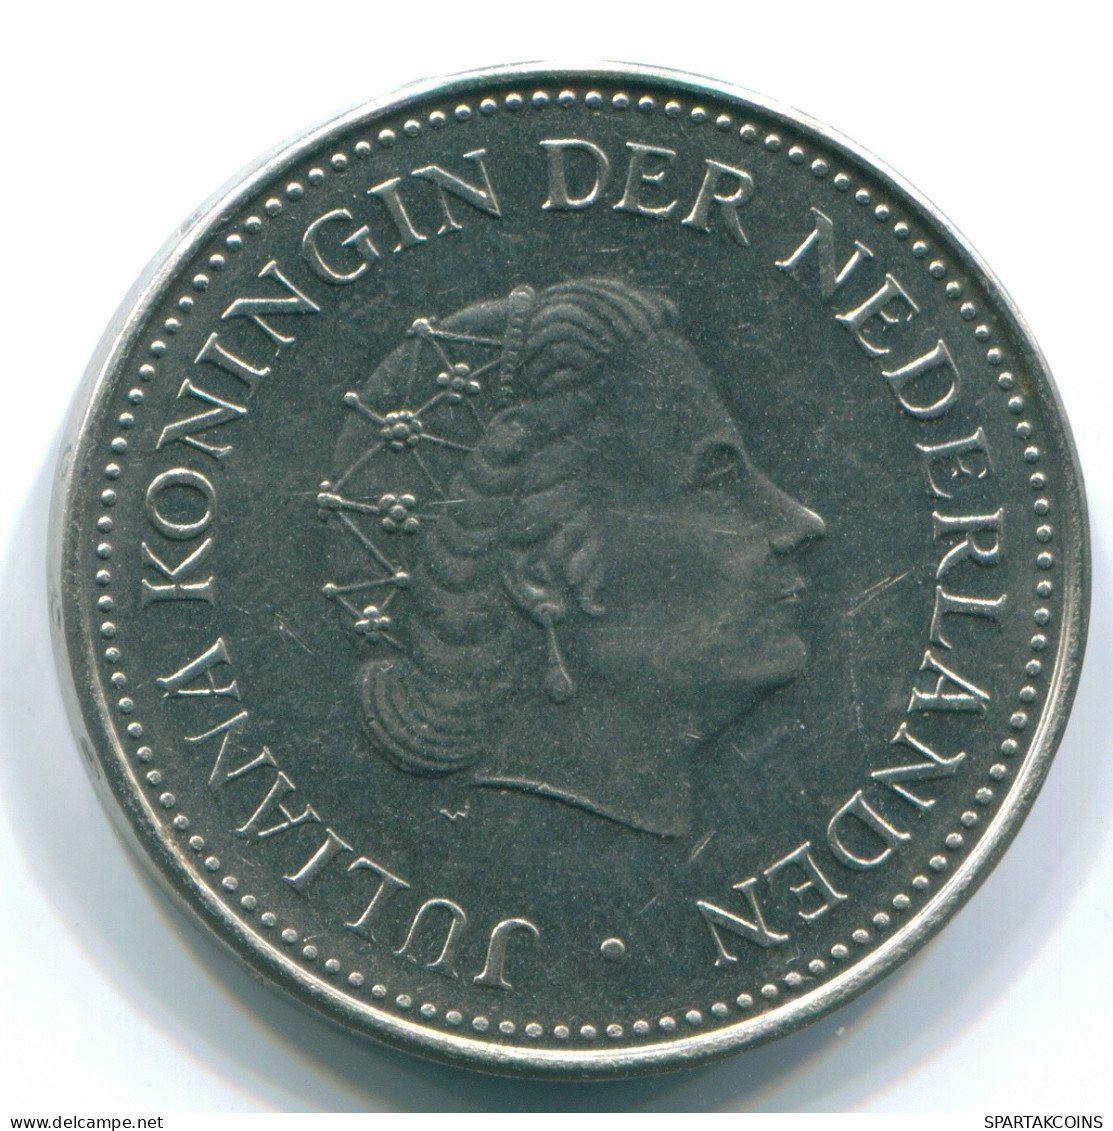 1 GULDEN 1971 NIEDERLÄNDISCHE ANTILLEN Nickel Koloniale Münze #S11961.D.A - Netherlands Antilles